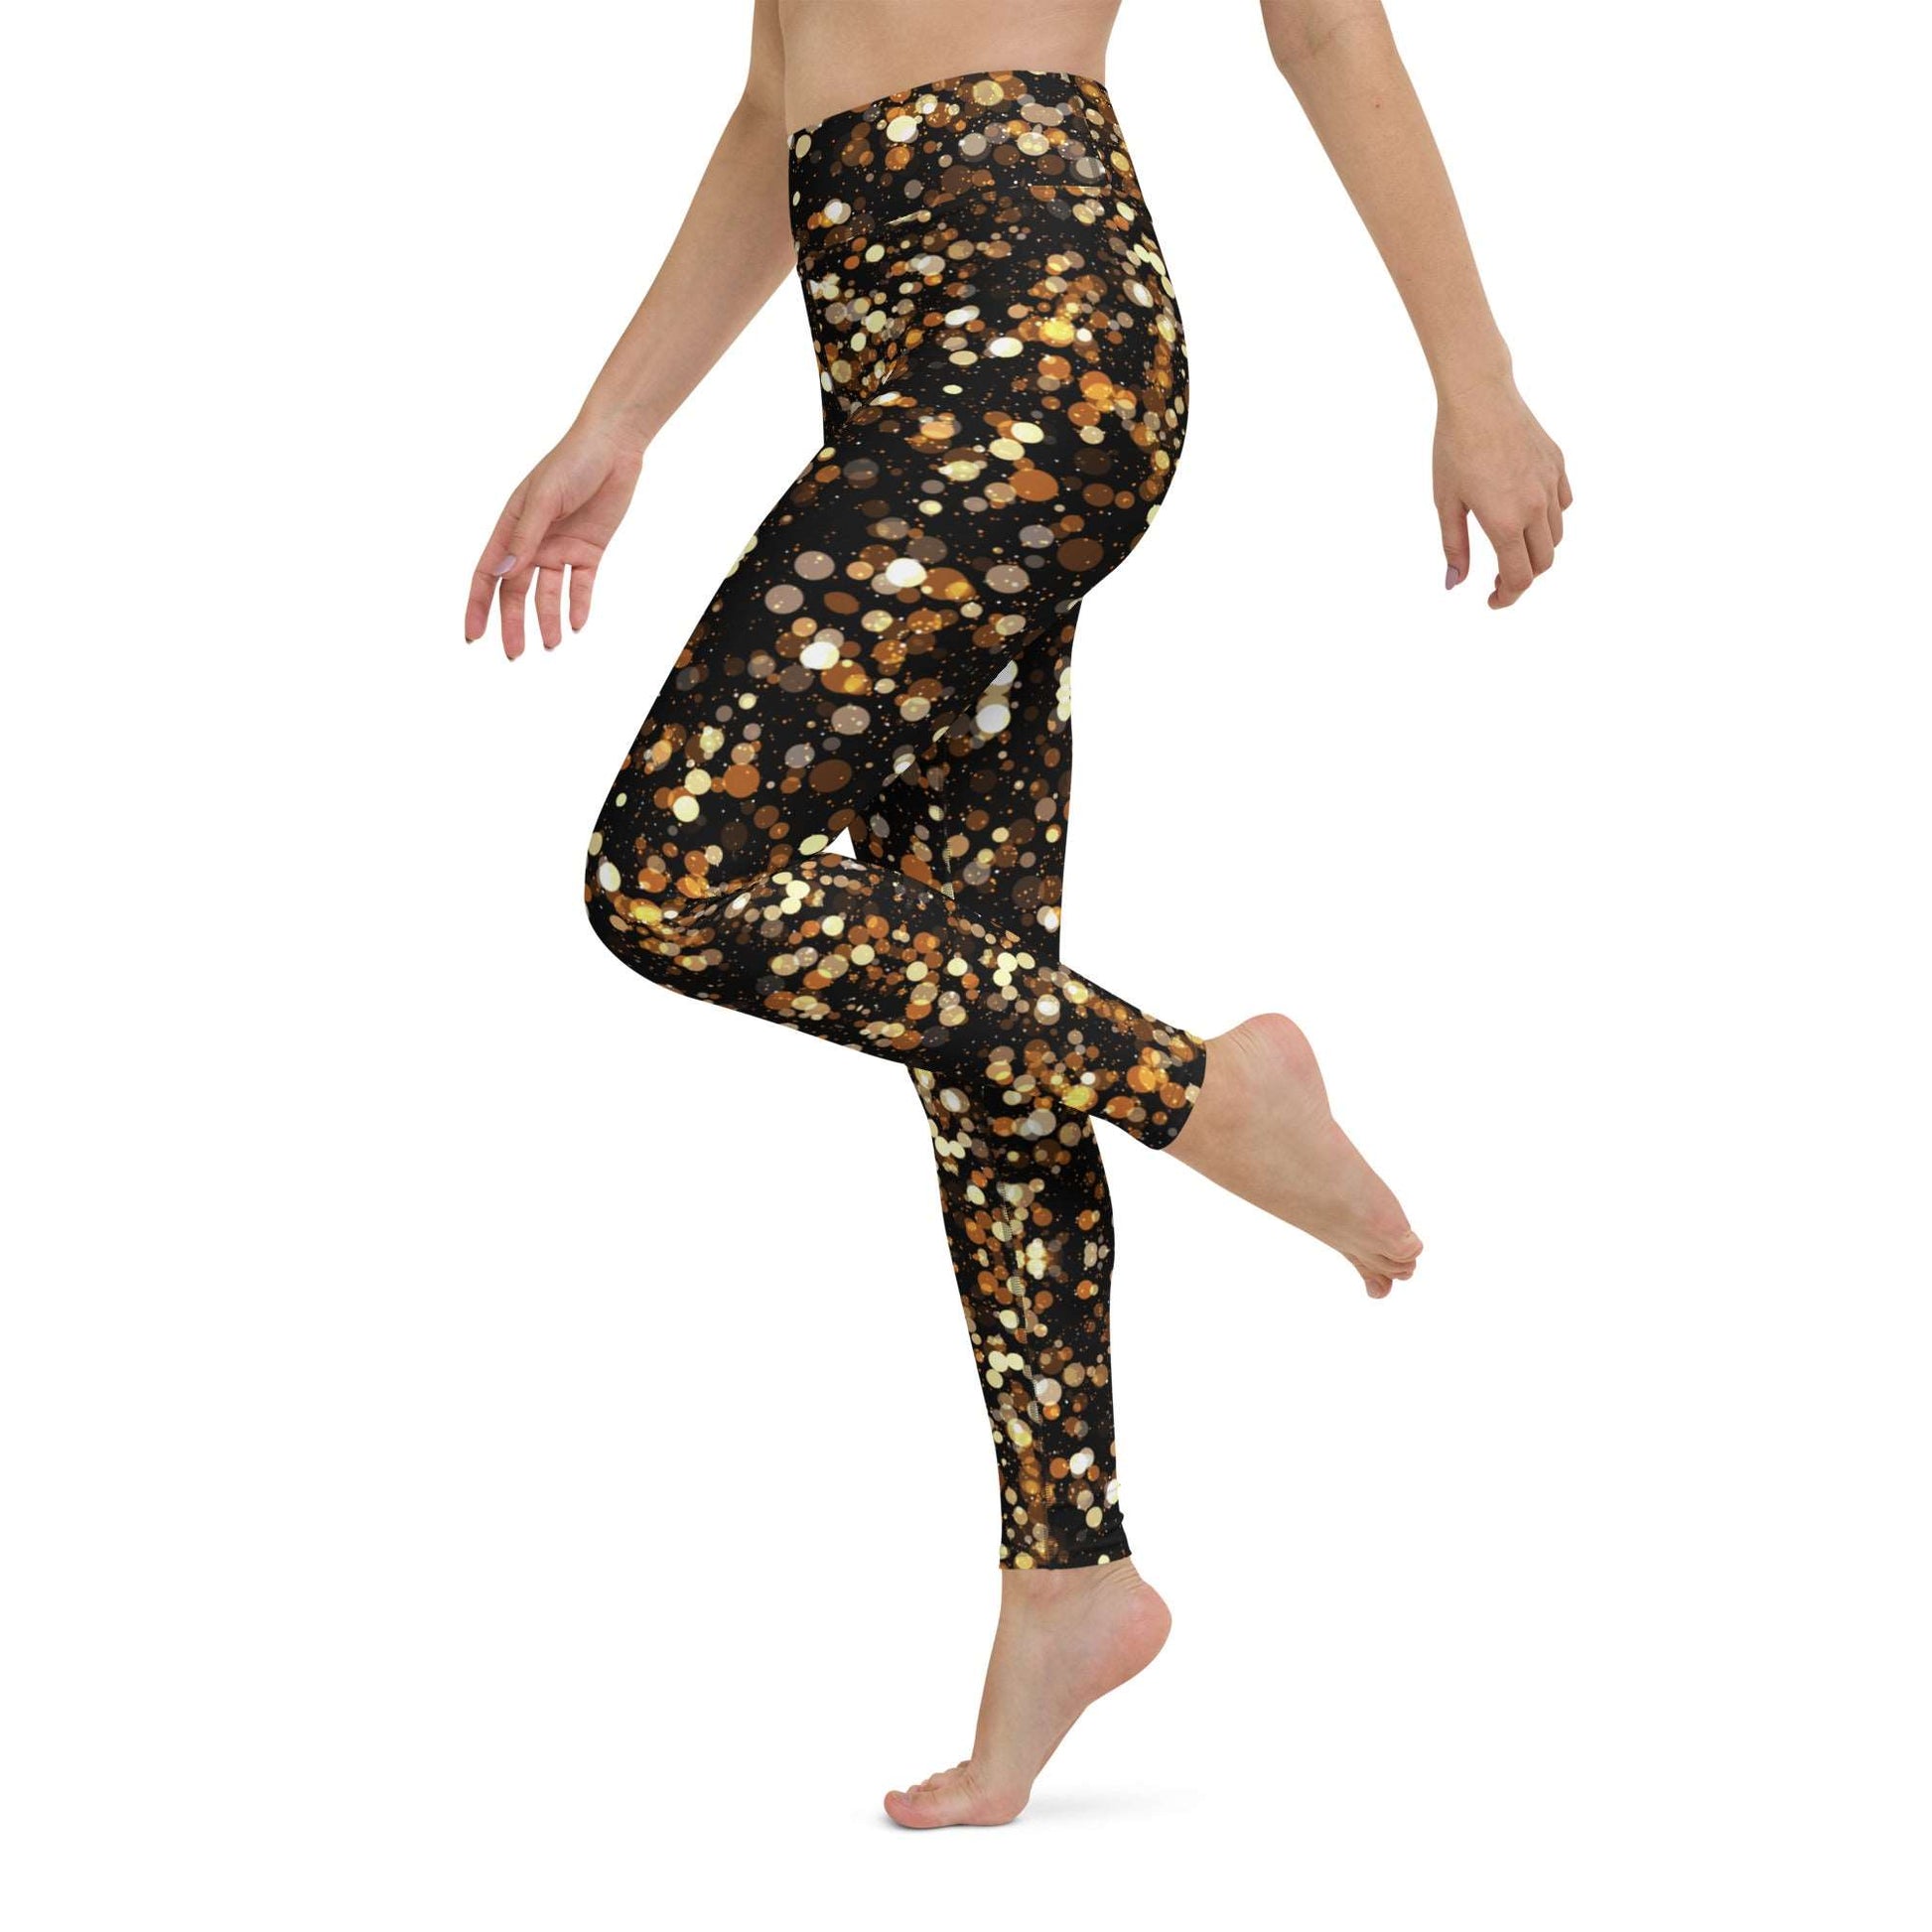 Golden Shimmer Yoga Leggings -Any Occasion Leggings, Gold Sparkle Leggings, Rave Leggings, Date Night Leggings